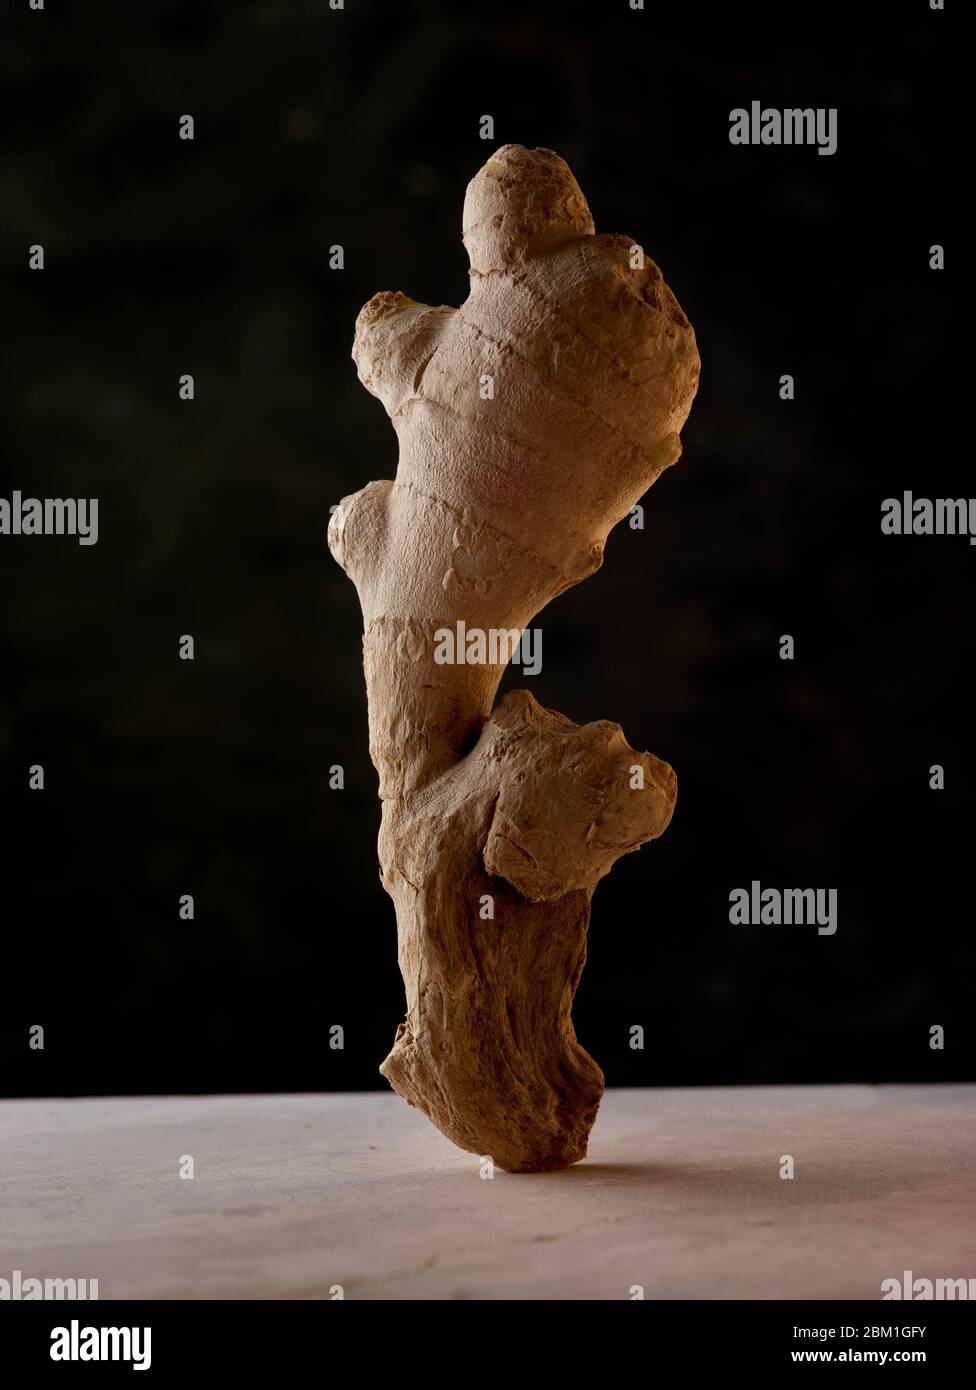 Statuesque und attraktive gut proportionierte natürliche Ingwer Wurzel Lebensmittelzutat Stillleben Studie Stockfoto